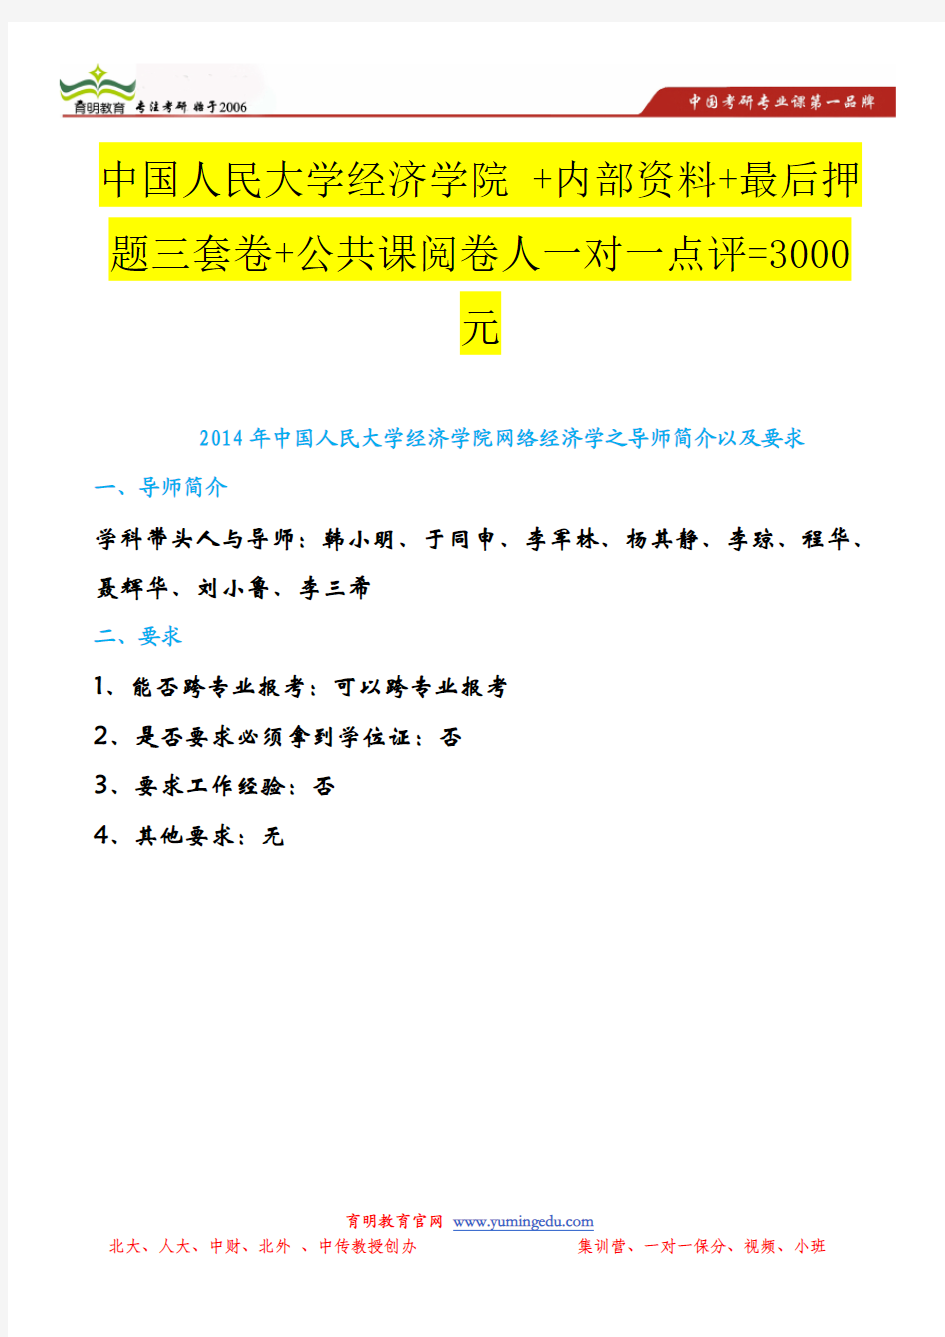 2014年中国人民大学经济学院网络经济学之导师简介以及要求